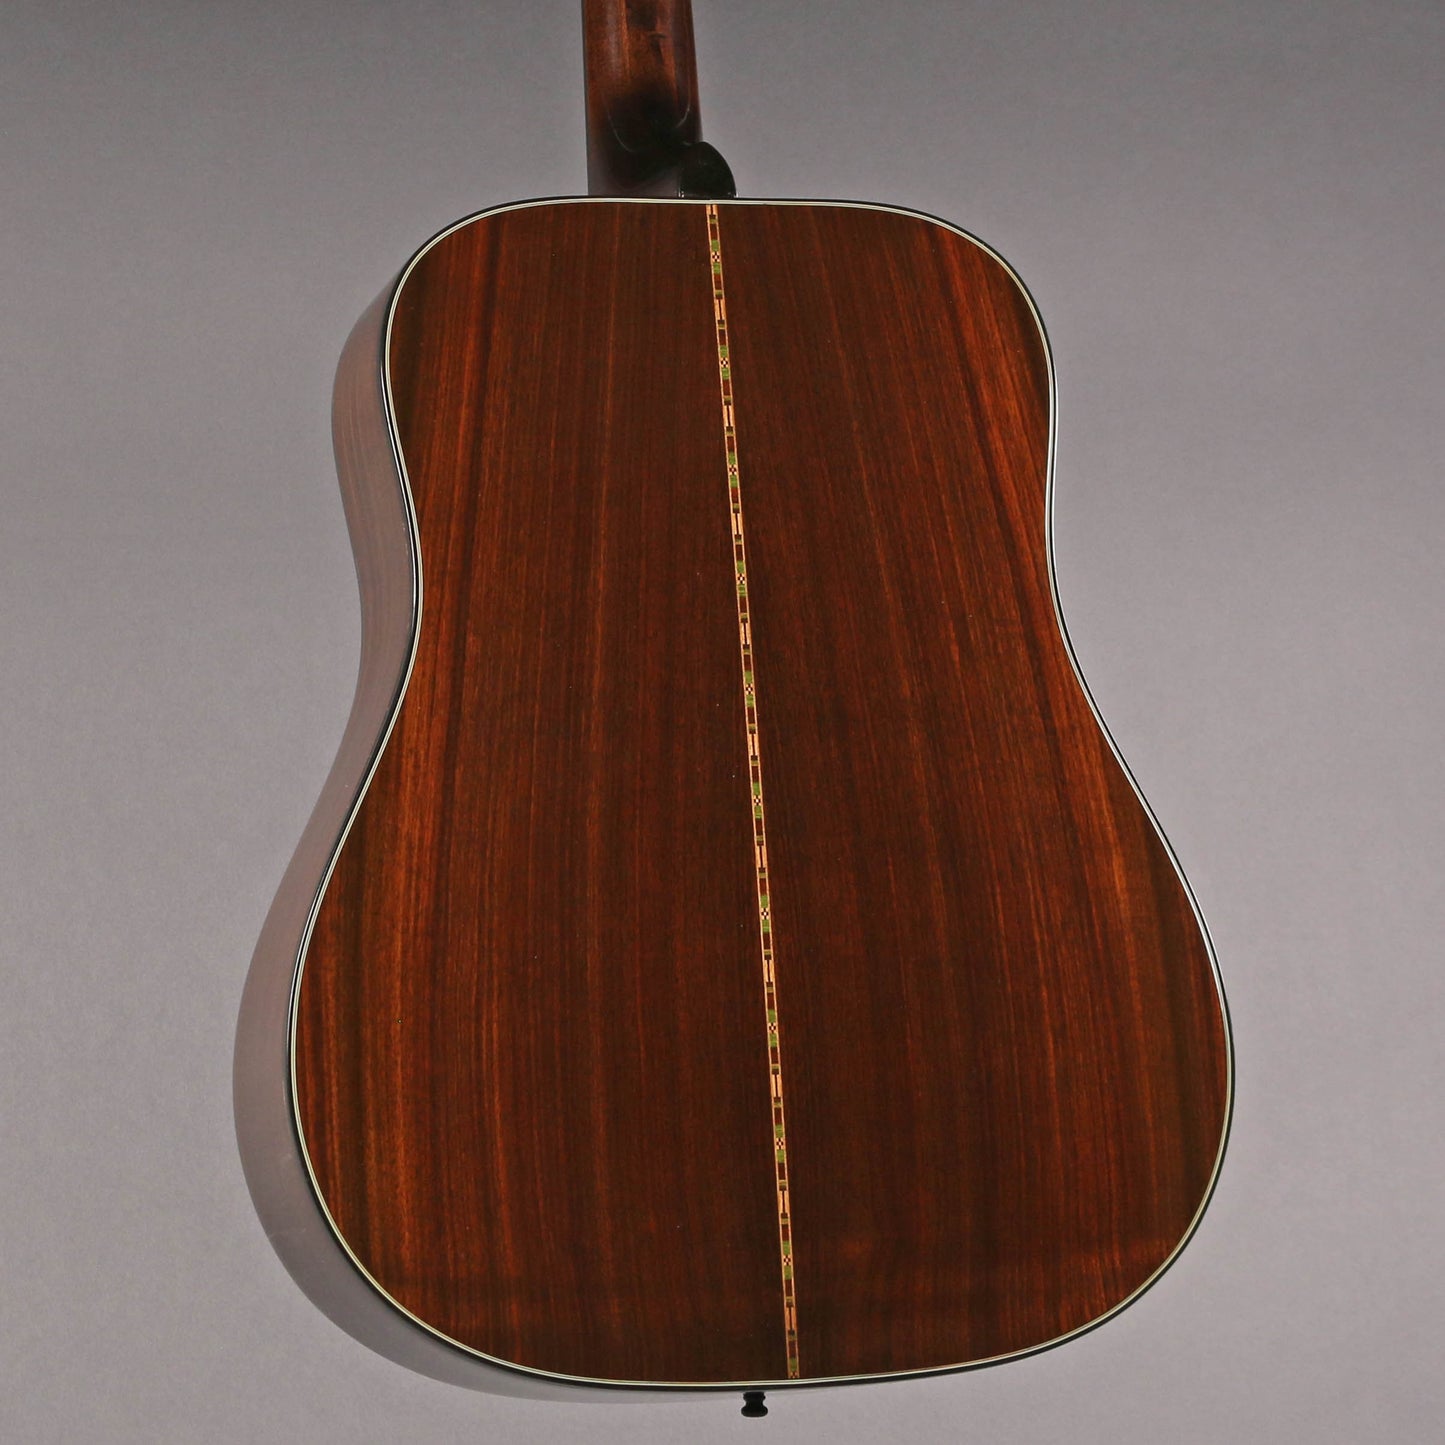 1975 Gibson Heritage Custom [*Kalamazoo Collection]